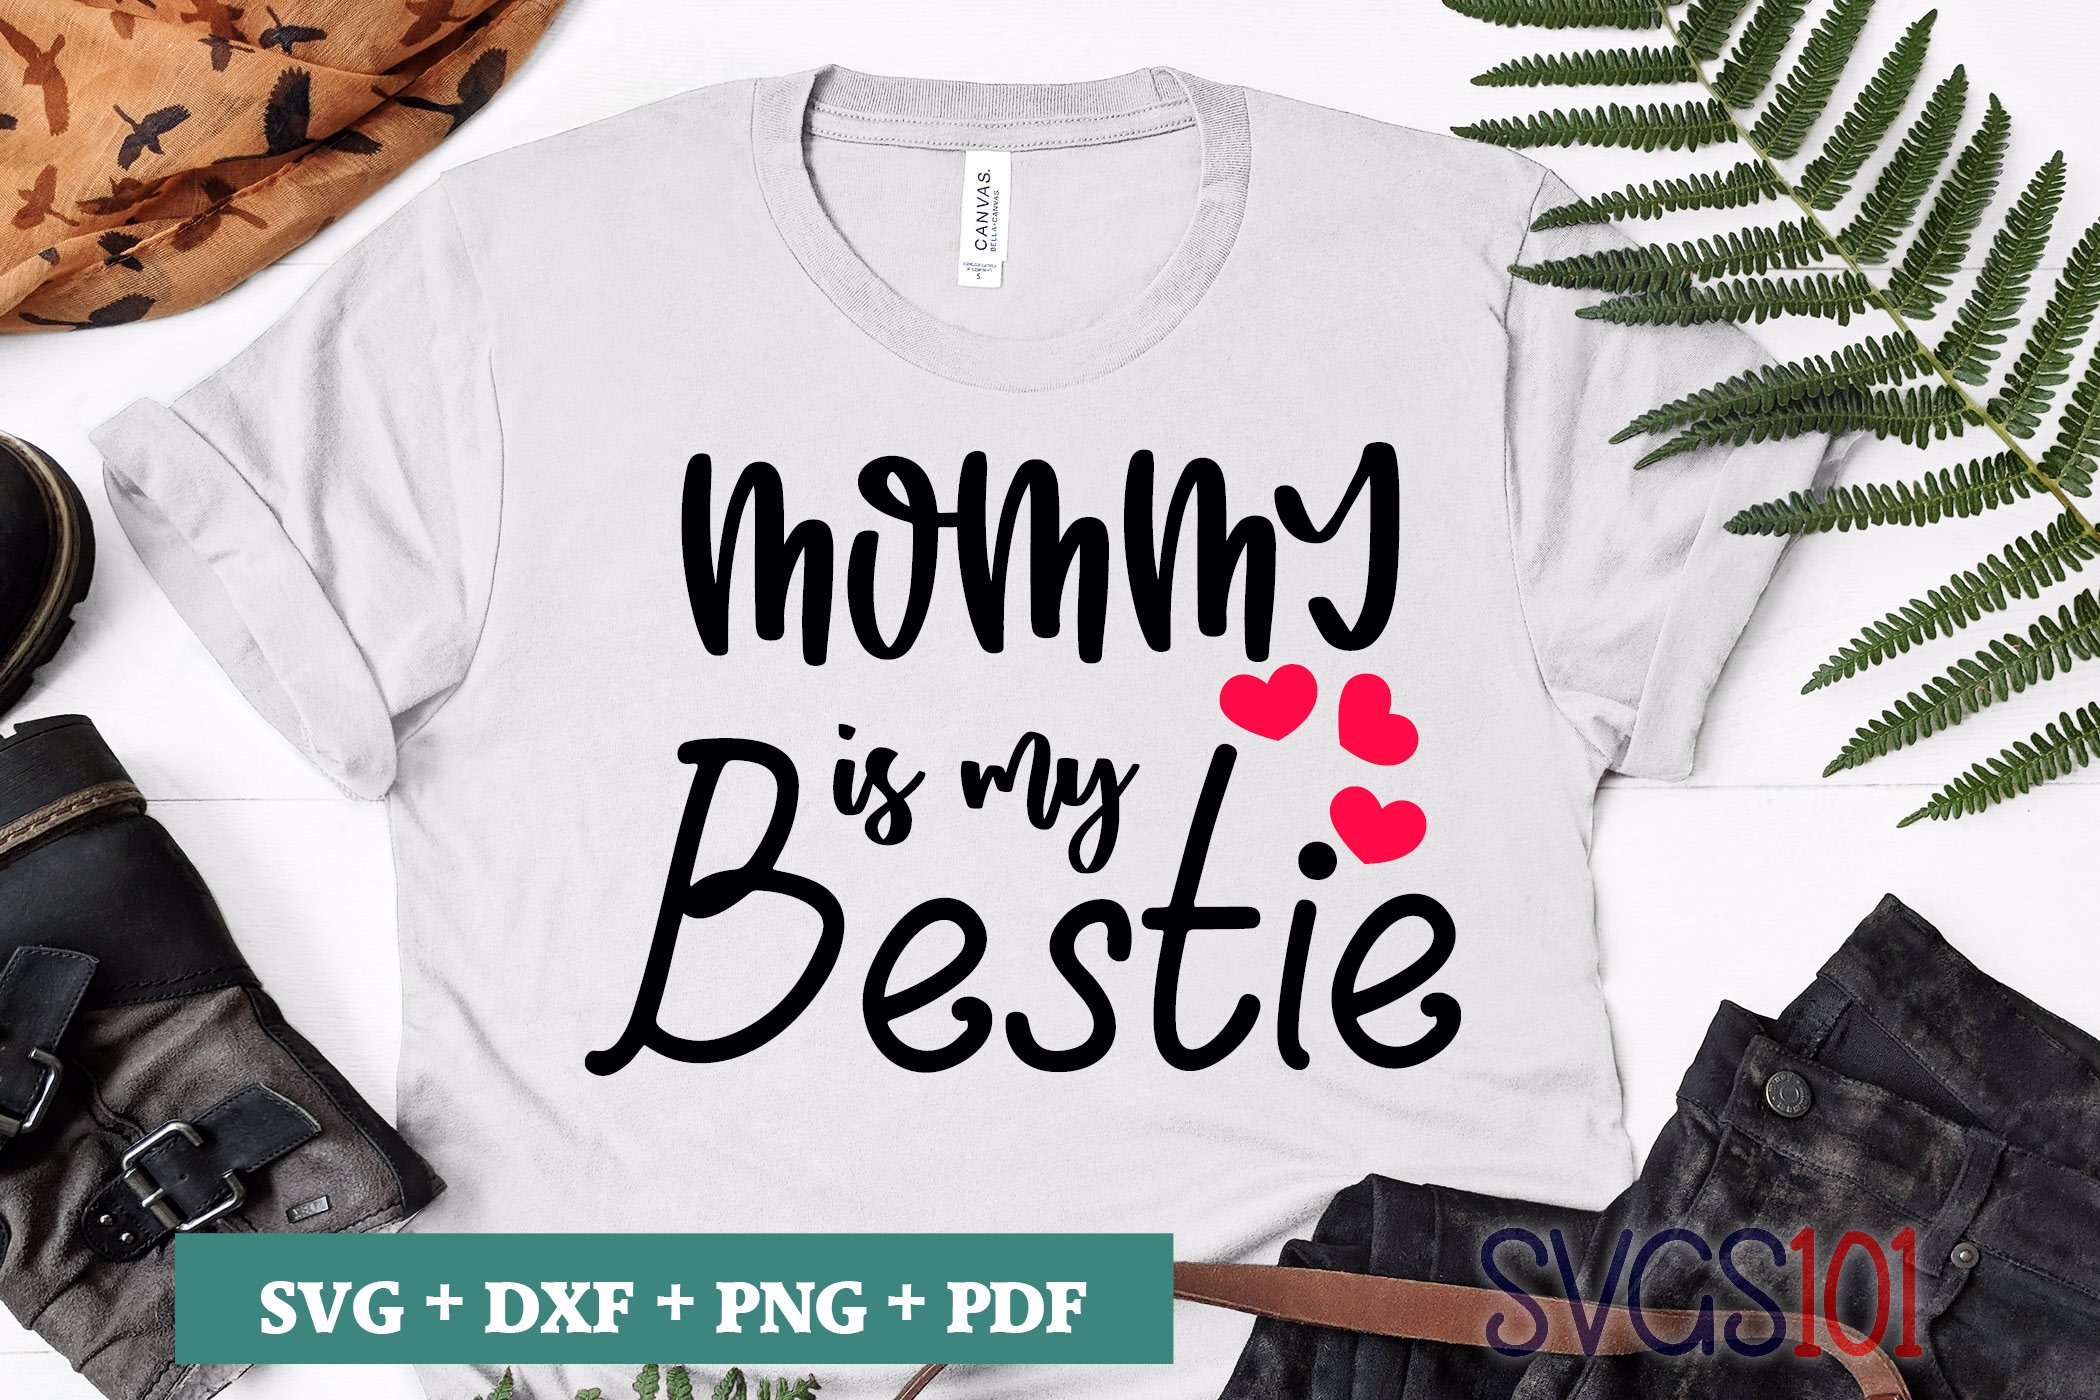 Mommy Is My Bestie